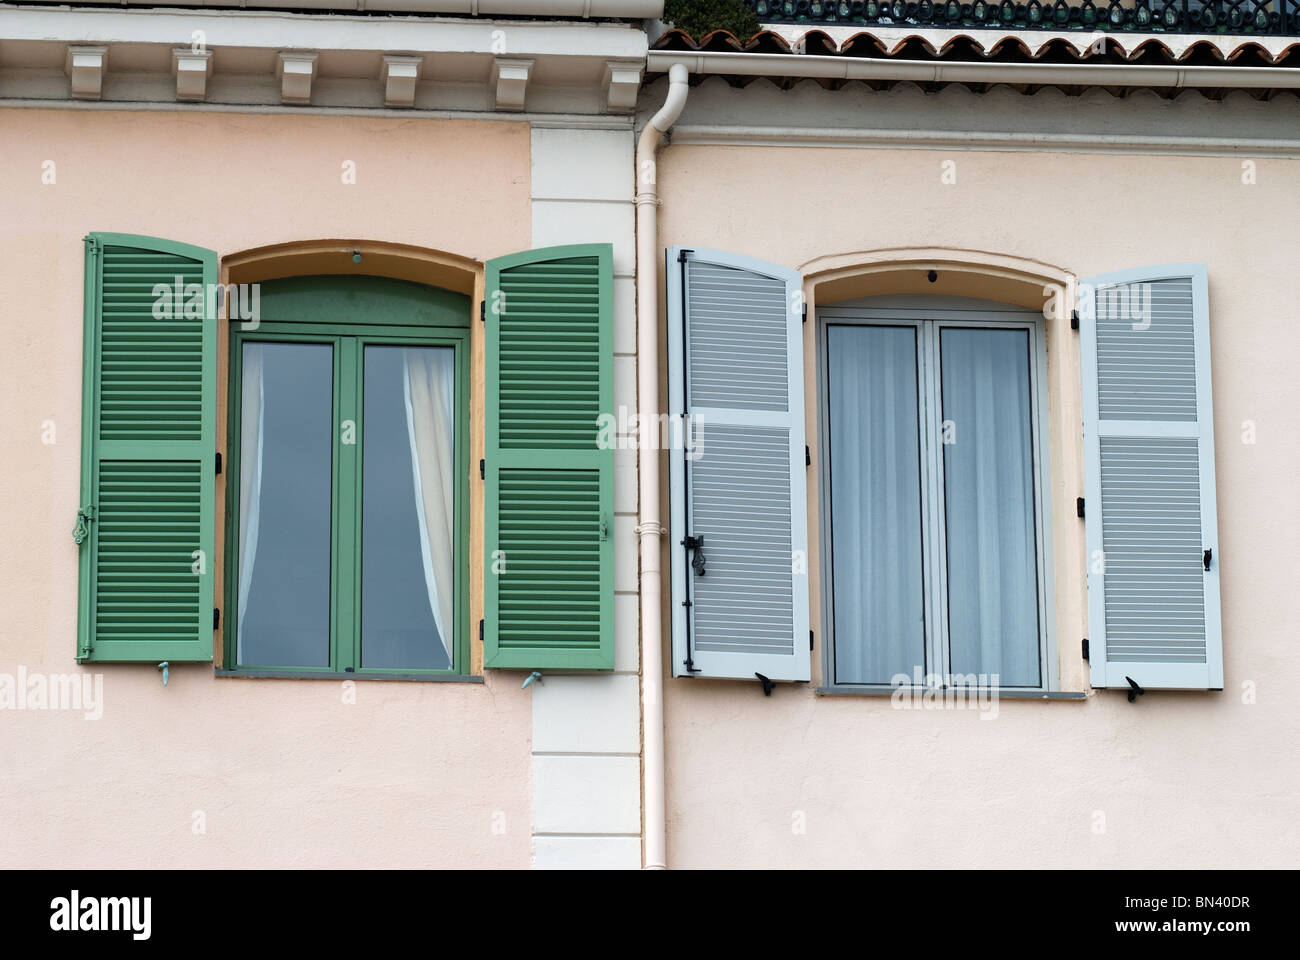 Fenster mit zwei verschiedenen farbigen Rahmen und Fensterläden, Mehrfamilienhaus in Cannes. Cote d ' Azur. Frankreich Stockfoto